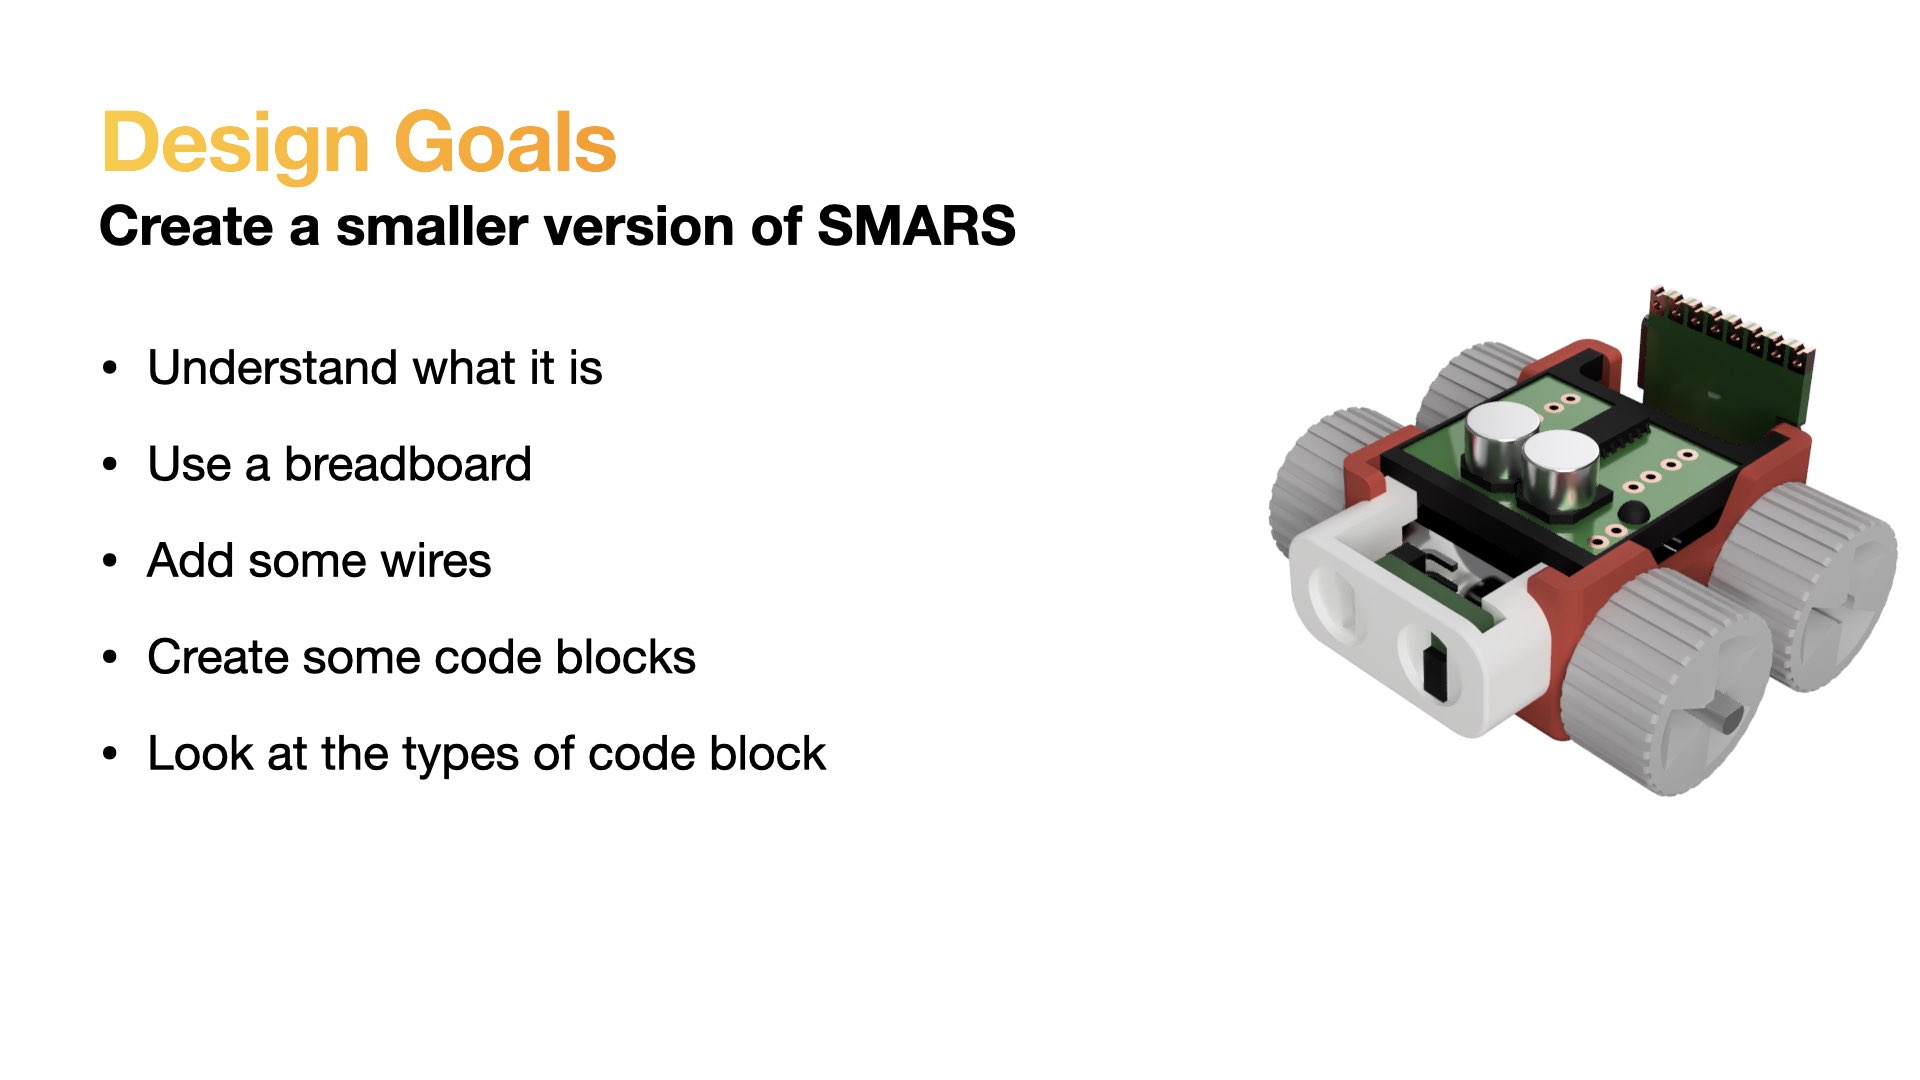 SMARS Mini 3d render